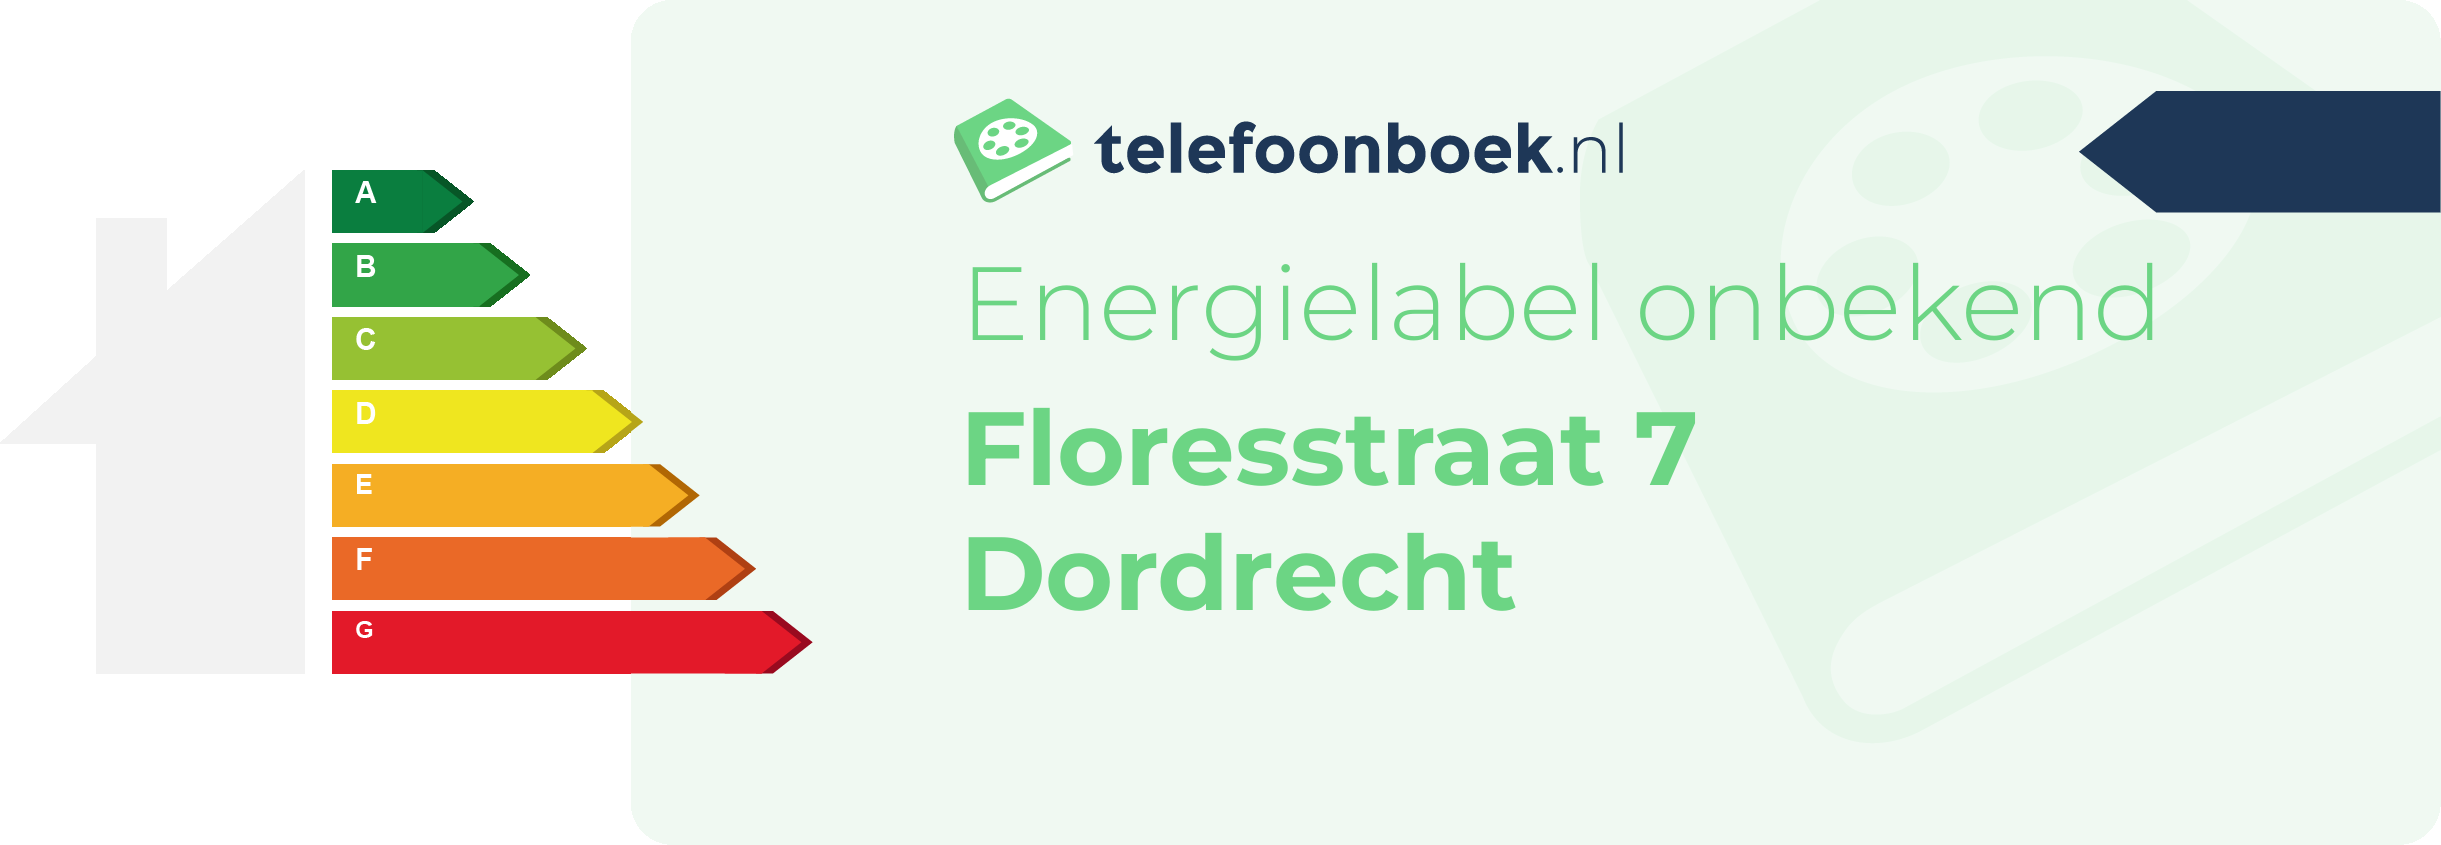 Energielabel Floresstraat 7 Dordrecht